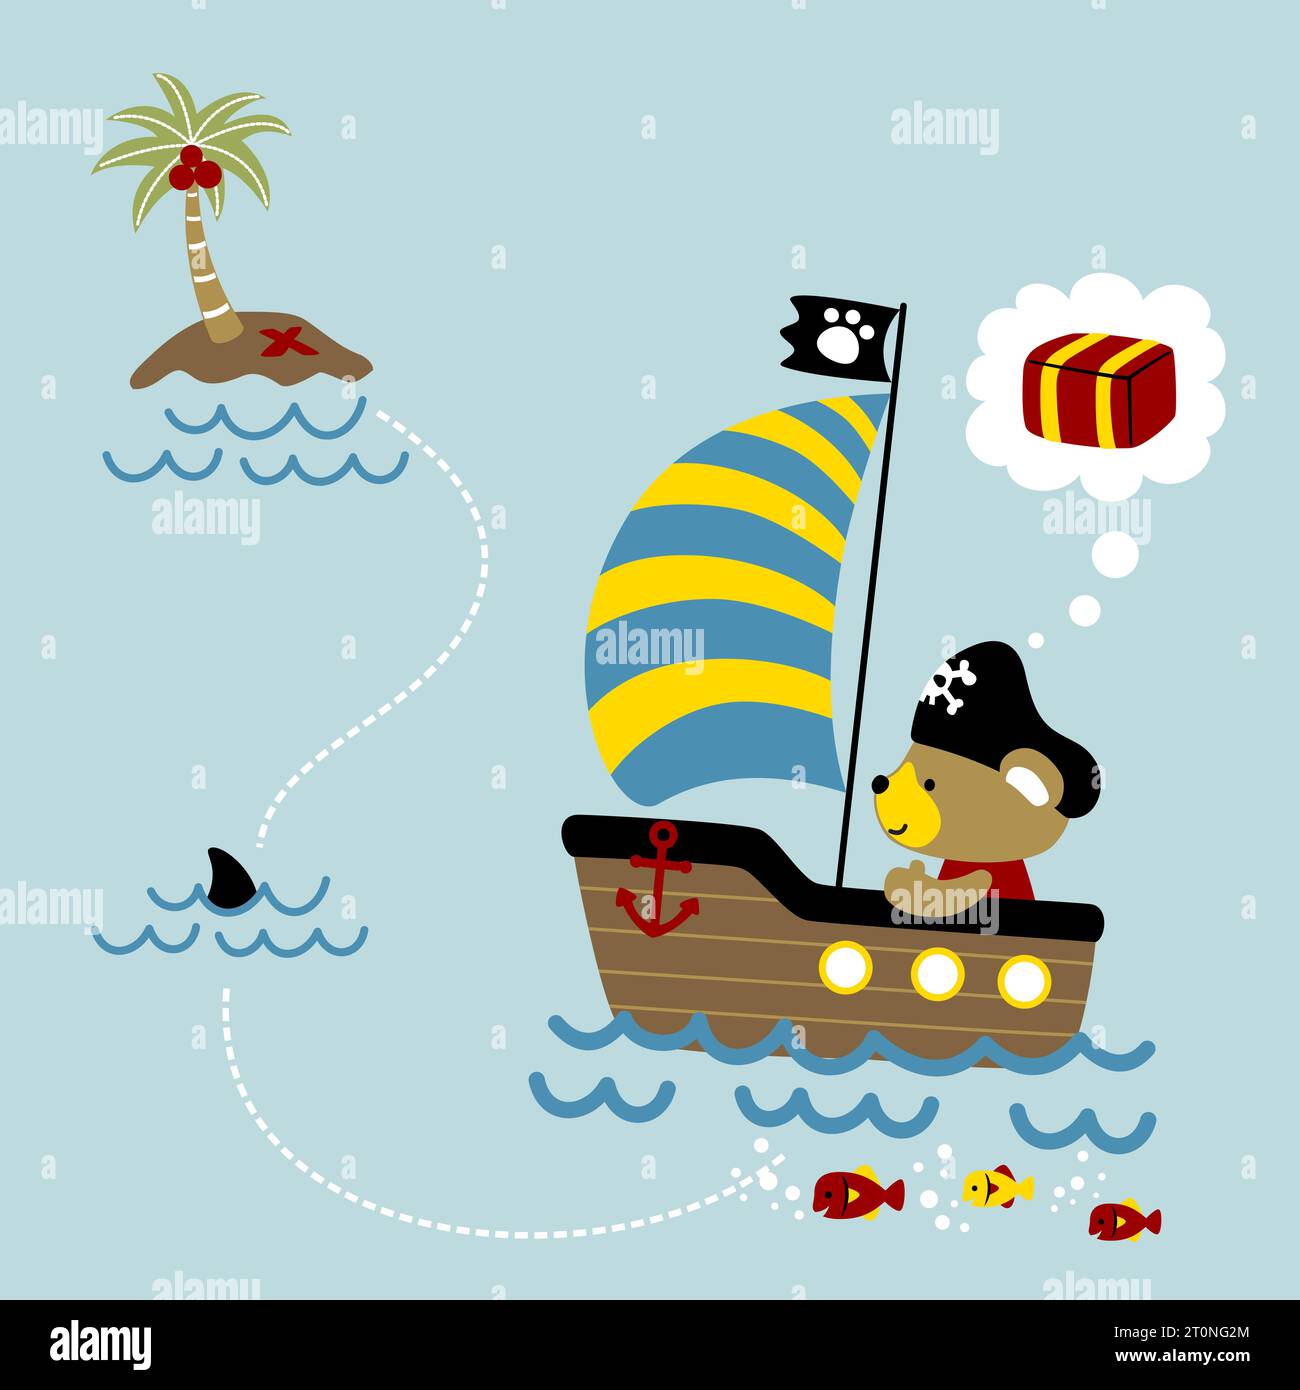 Kleiner Bär auf dem Segelboot geht zu einer kleinen Insel, Piratenelemente, Vektor-Comic-Illustration Stock Vektor